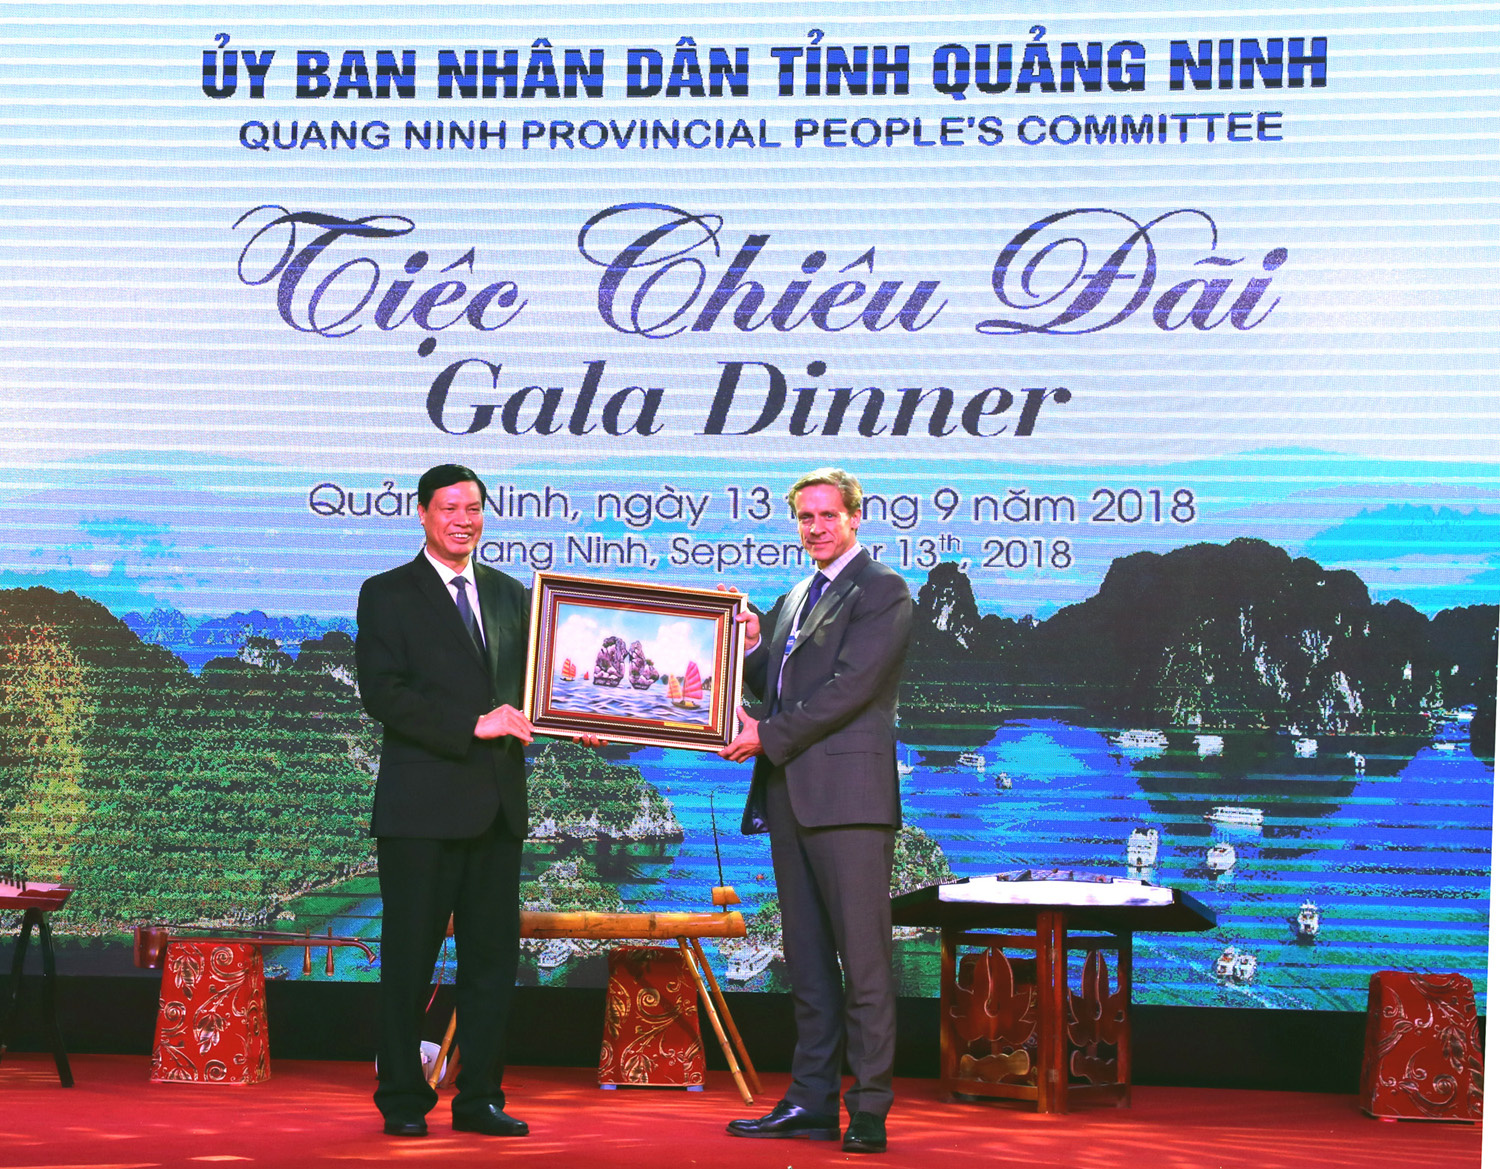 Đồng chí Nguyễn Đức Long, Phó Bí thư Tỉnh ủy, Chủ tịch UBND tỉnh, trao quà lưu niệm của tỉnh cho Ông Justin Wook, Giám đốc khu vực Châu Á - Thái Bình Dương.